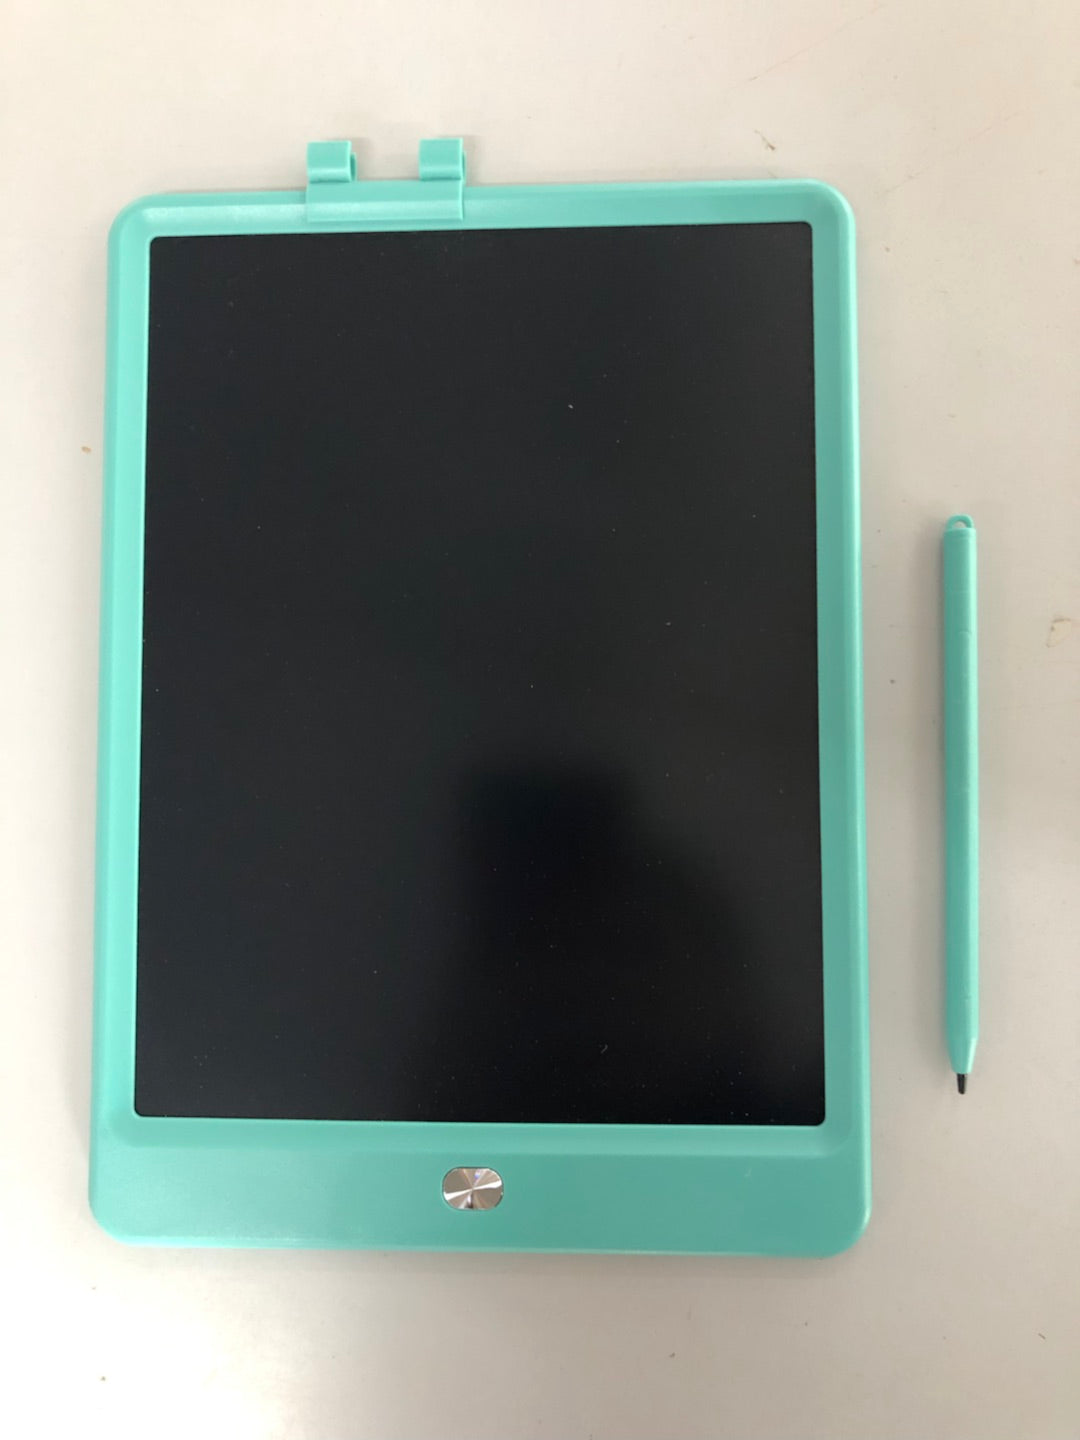 Tableta LCD para niños de 10 pulgadas para uso doméstico y empresarial